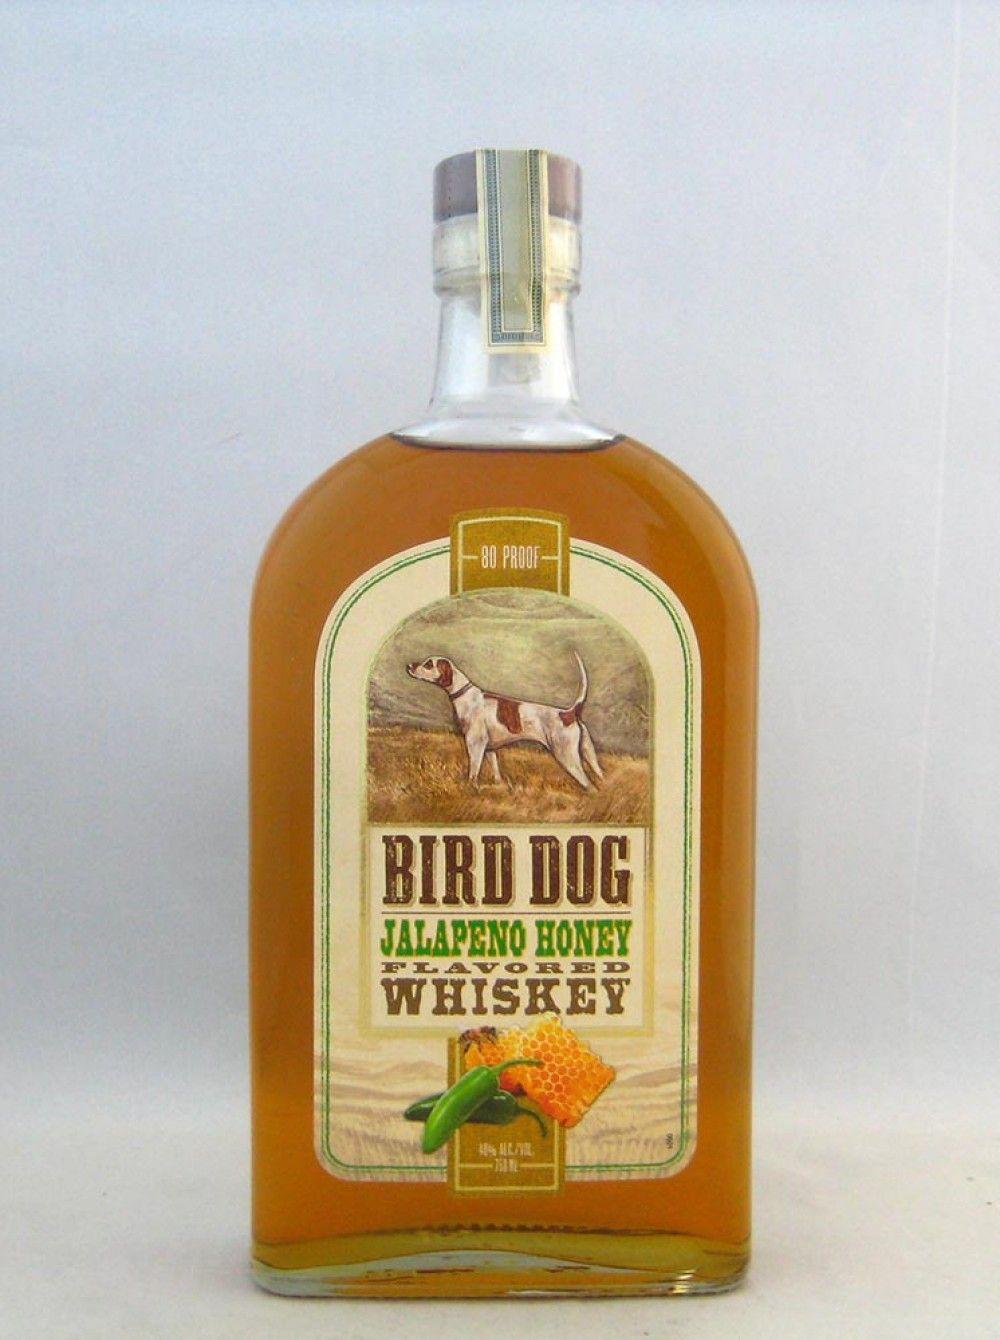 Bird Dog Whiskey Logo - BIRD DOG WHISKEY HONEY JALAPENO WHISKEY FLAVORED WHISKEY